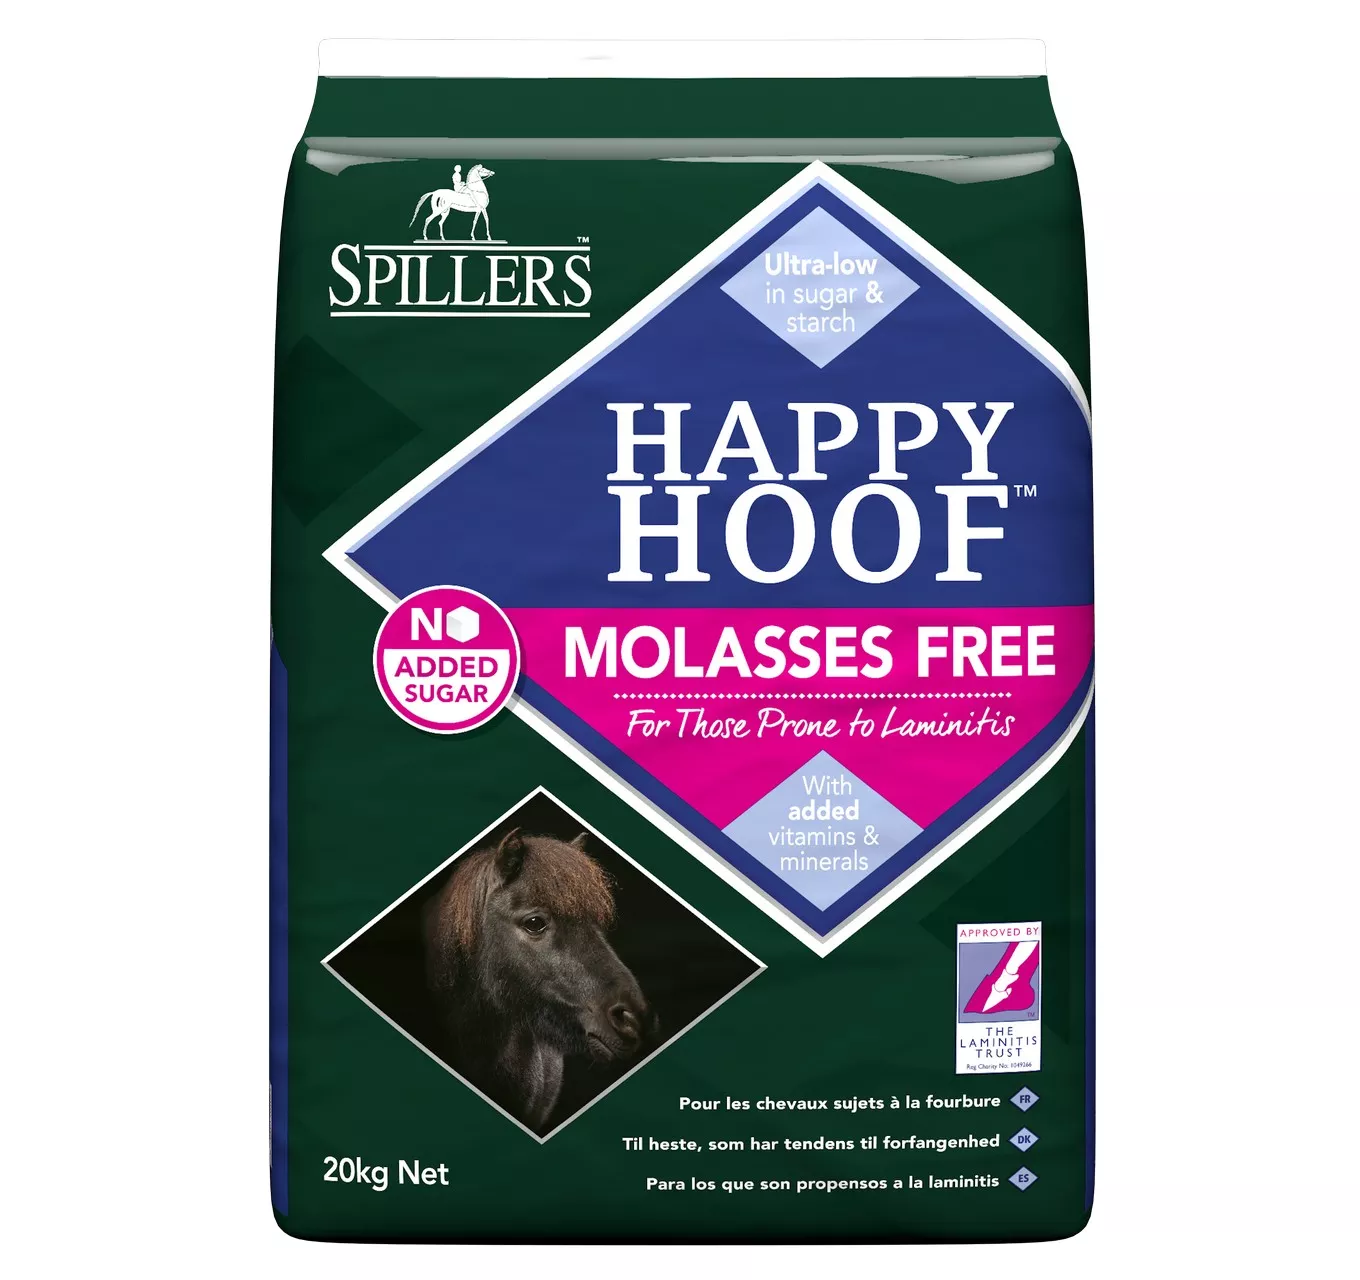 Spillers Happy Hoof Molas Free